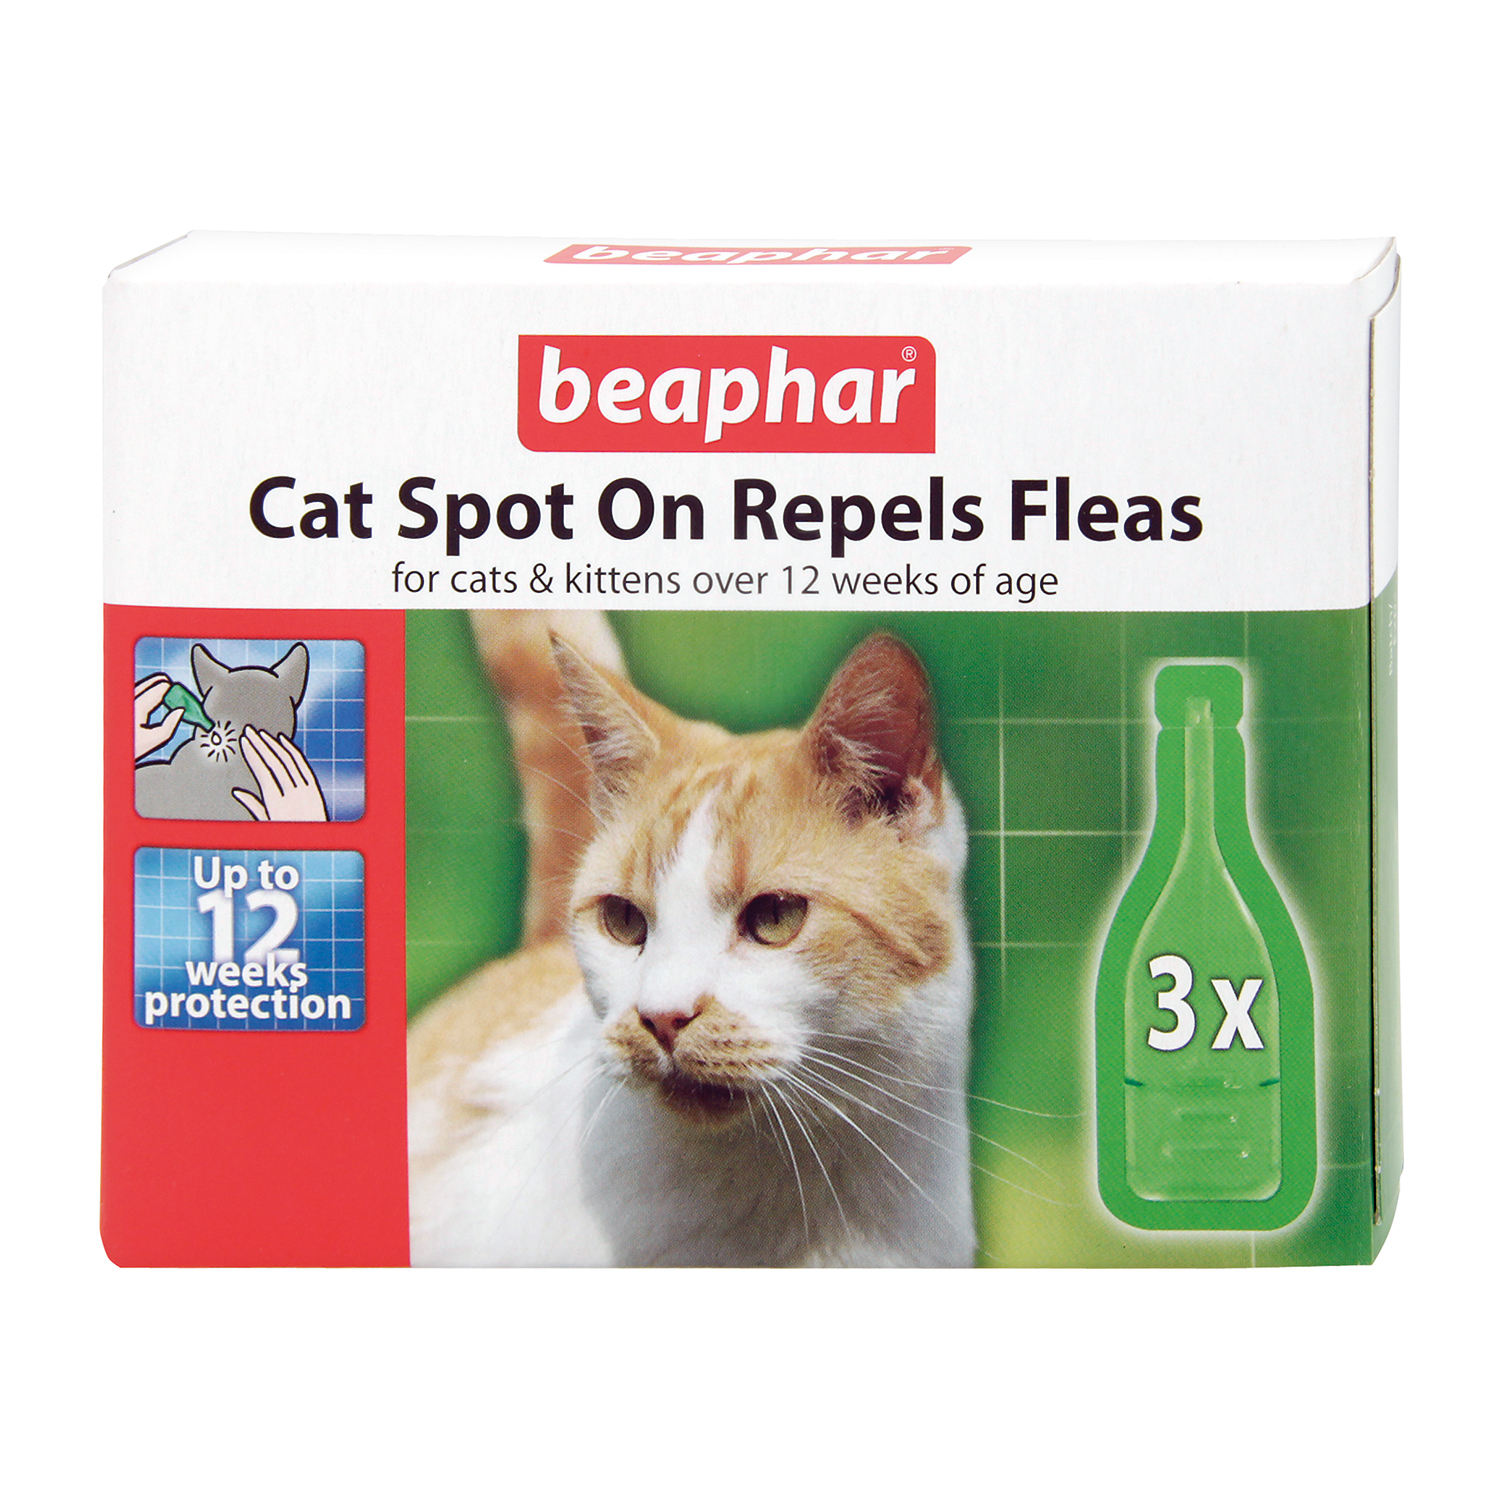 Beaphar Spot On Cat Flea Repellent 6 Pack Image 3